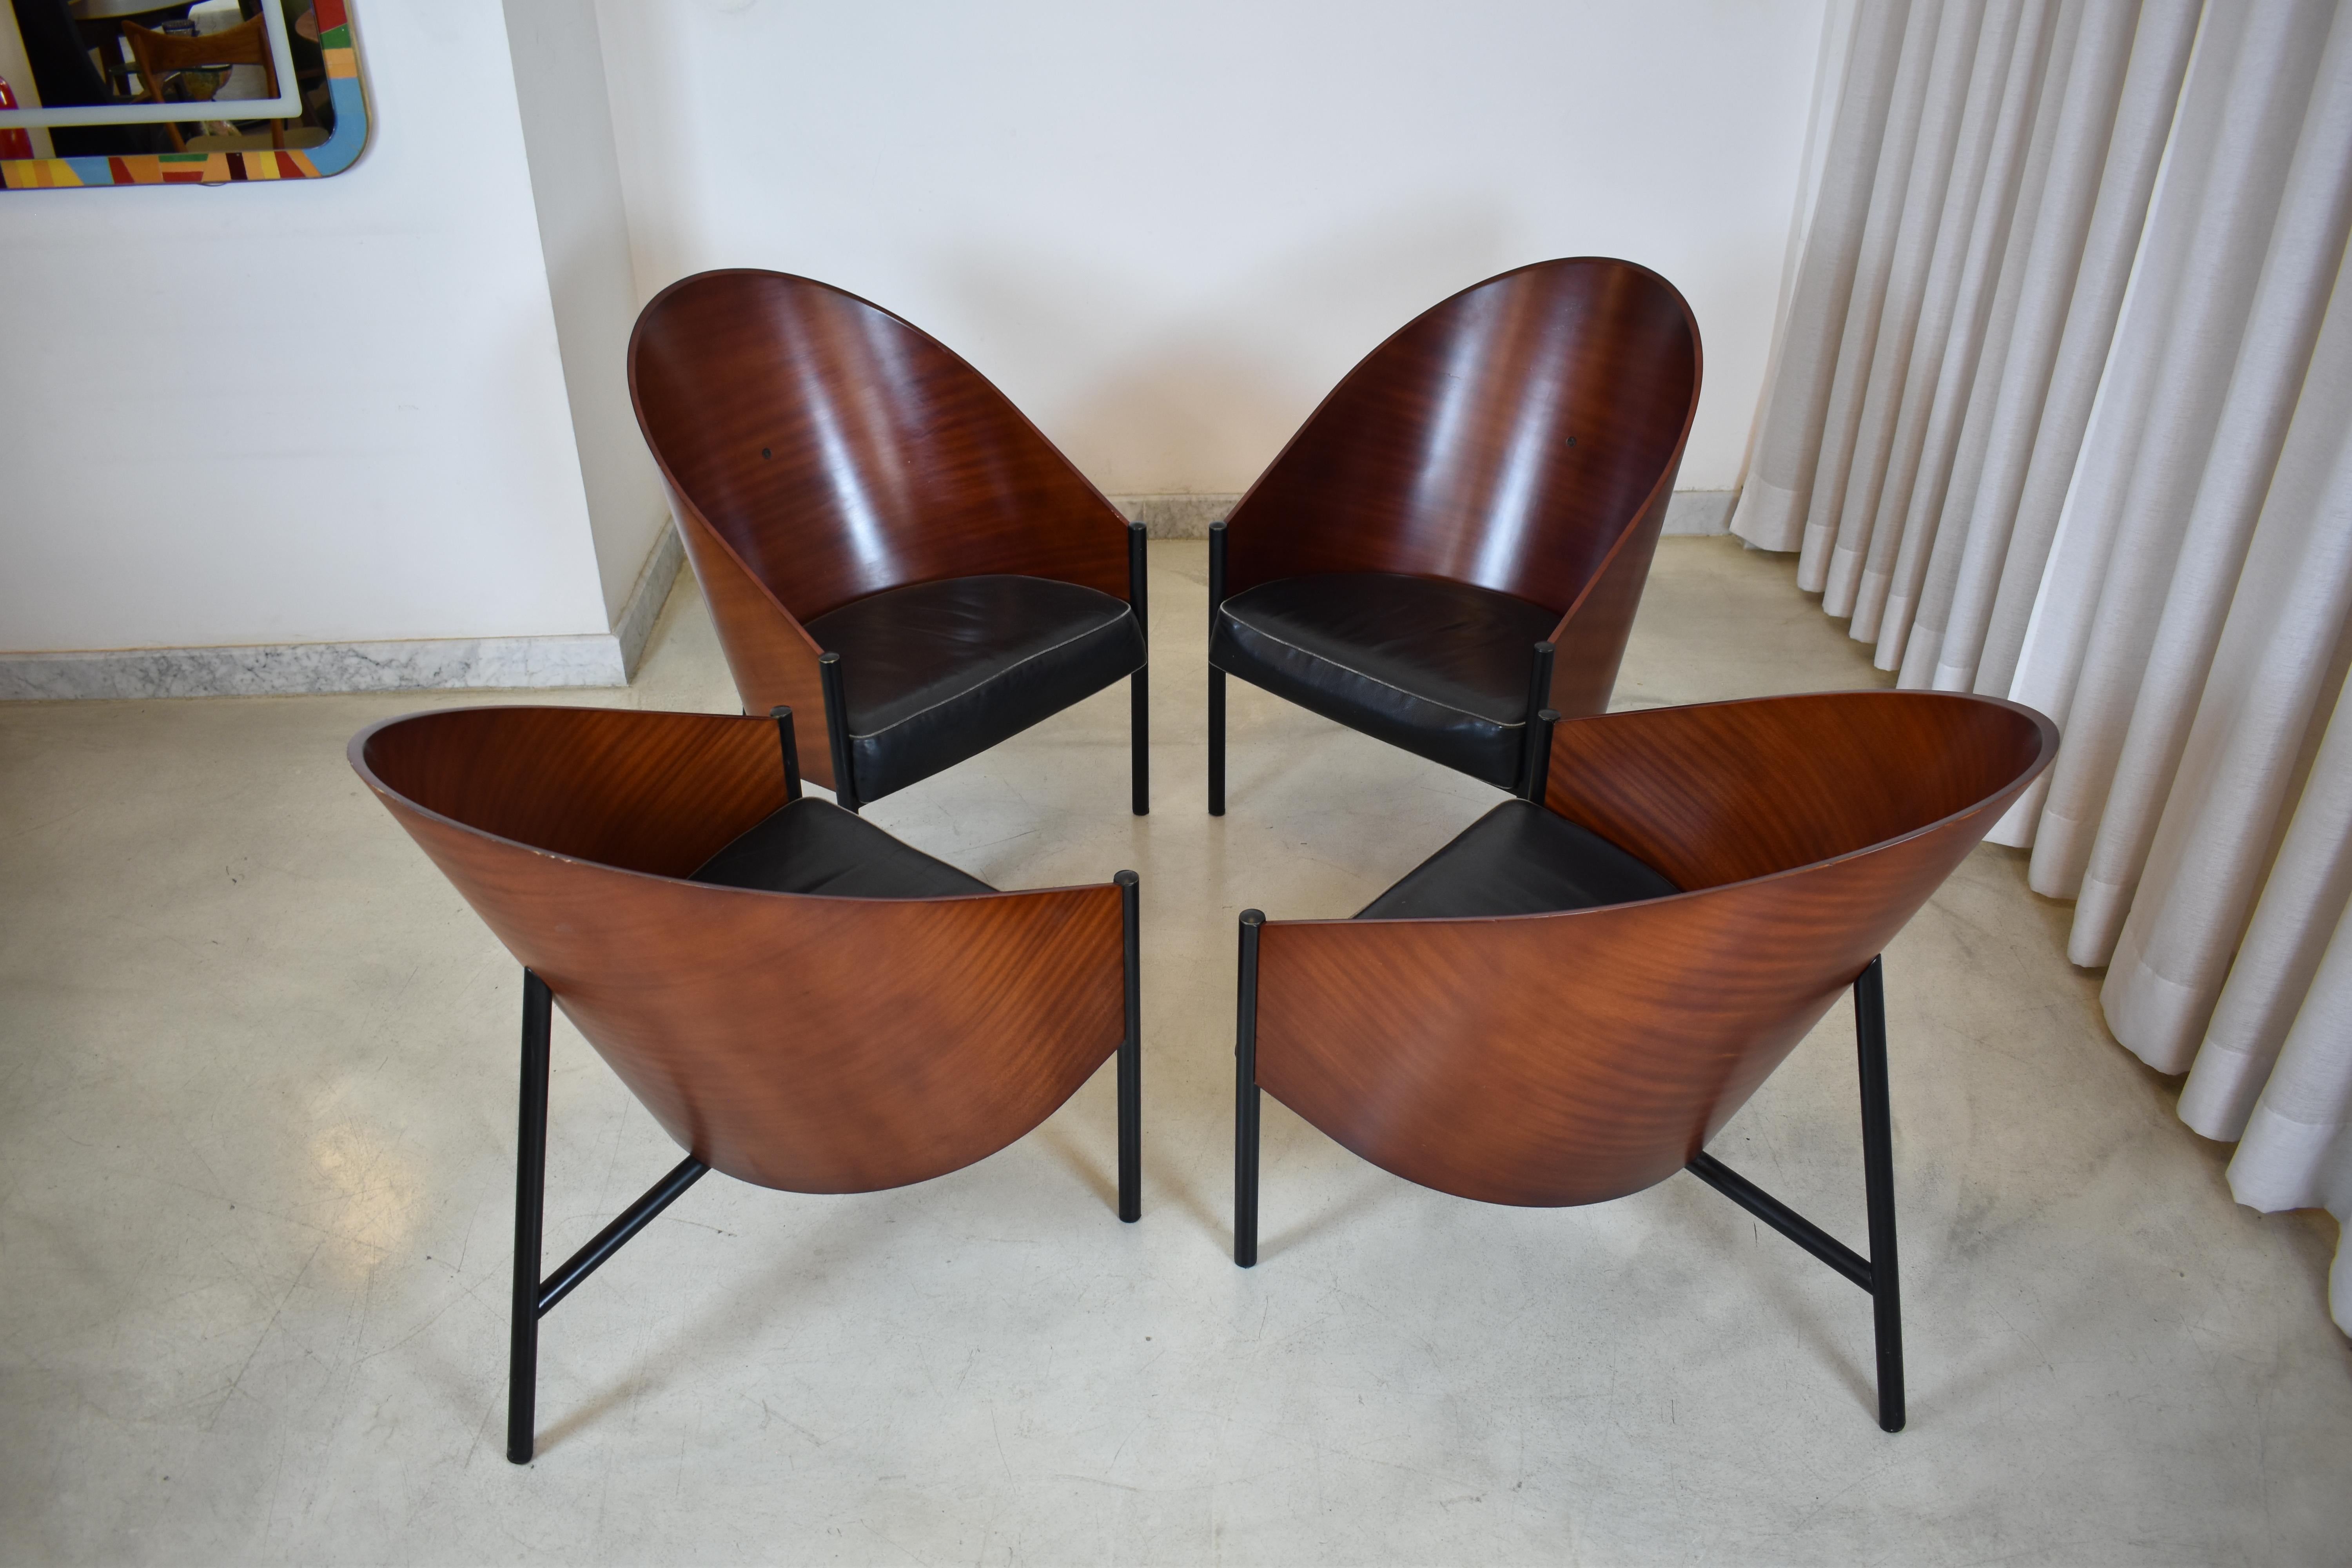 Conçu par le célèbre Philippe Starck en 1980, le fauteuil Pratfall est un joyau du design moderne. Alliant minimalisme et fonctionnalité, cette première édition est un reflet distinctif du style avant-gardiste de Starck. Fabriqué avec des matériaux